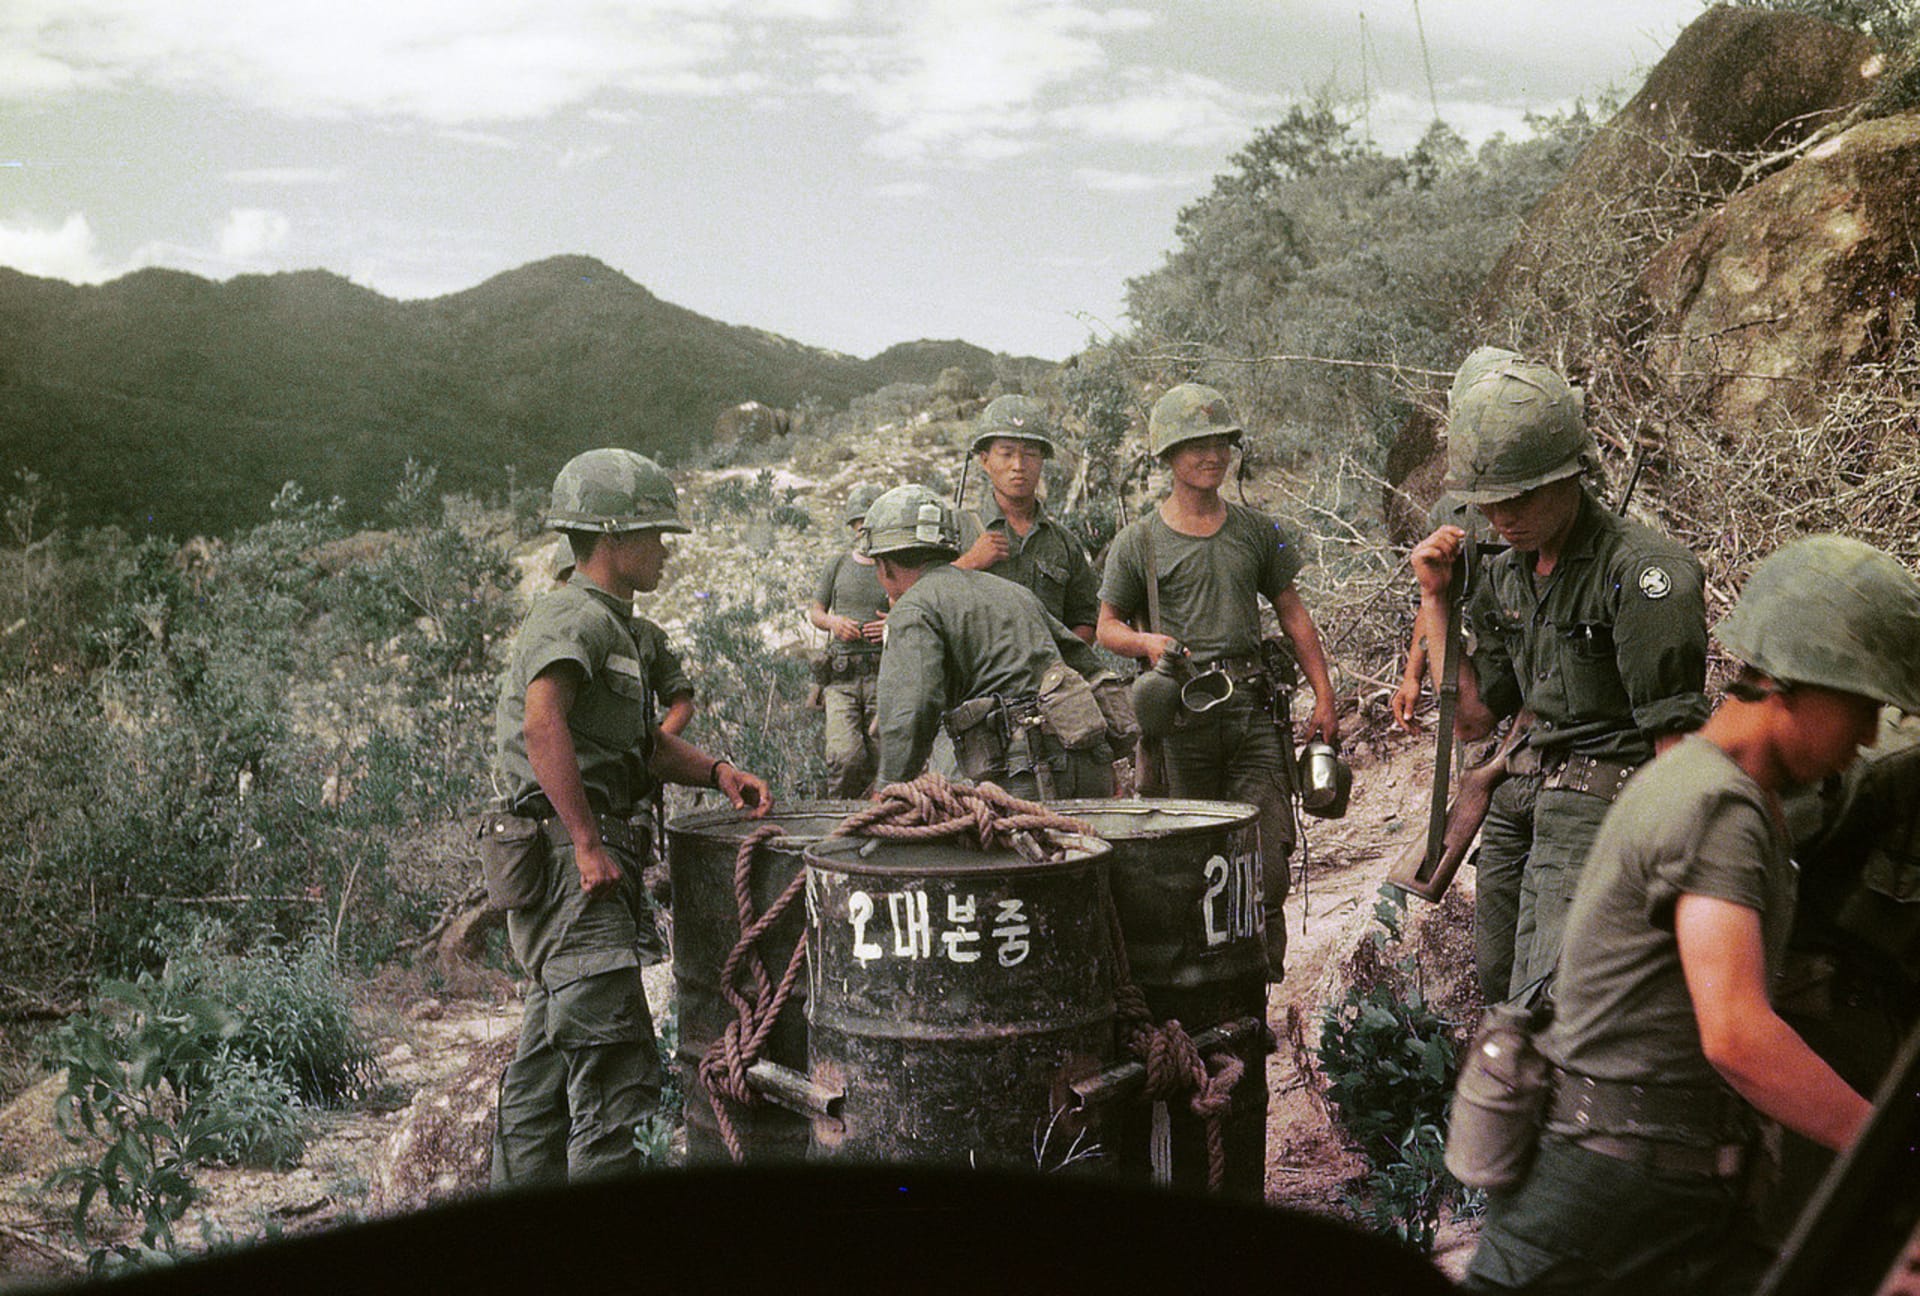 Vietnamská válka - jedno z velkých dramat 20. století